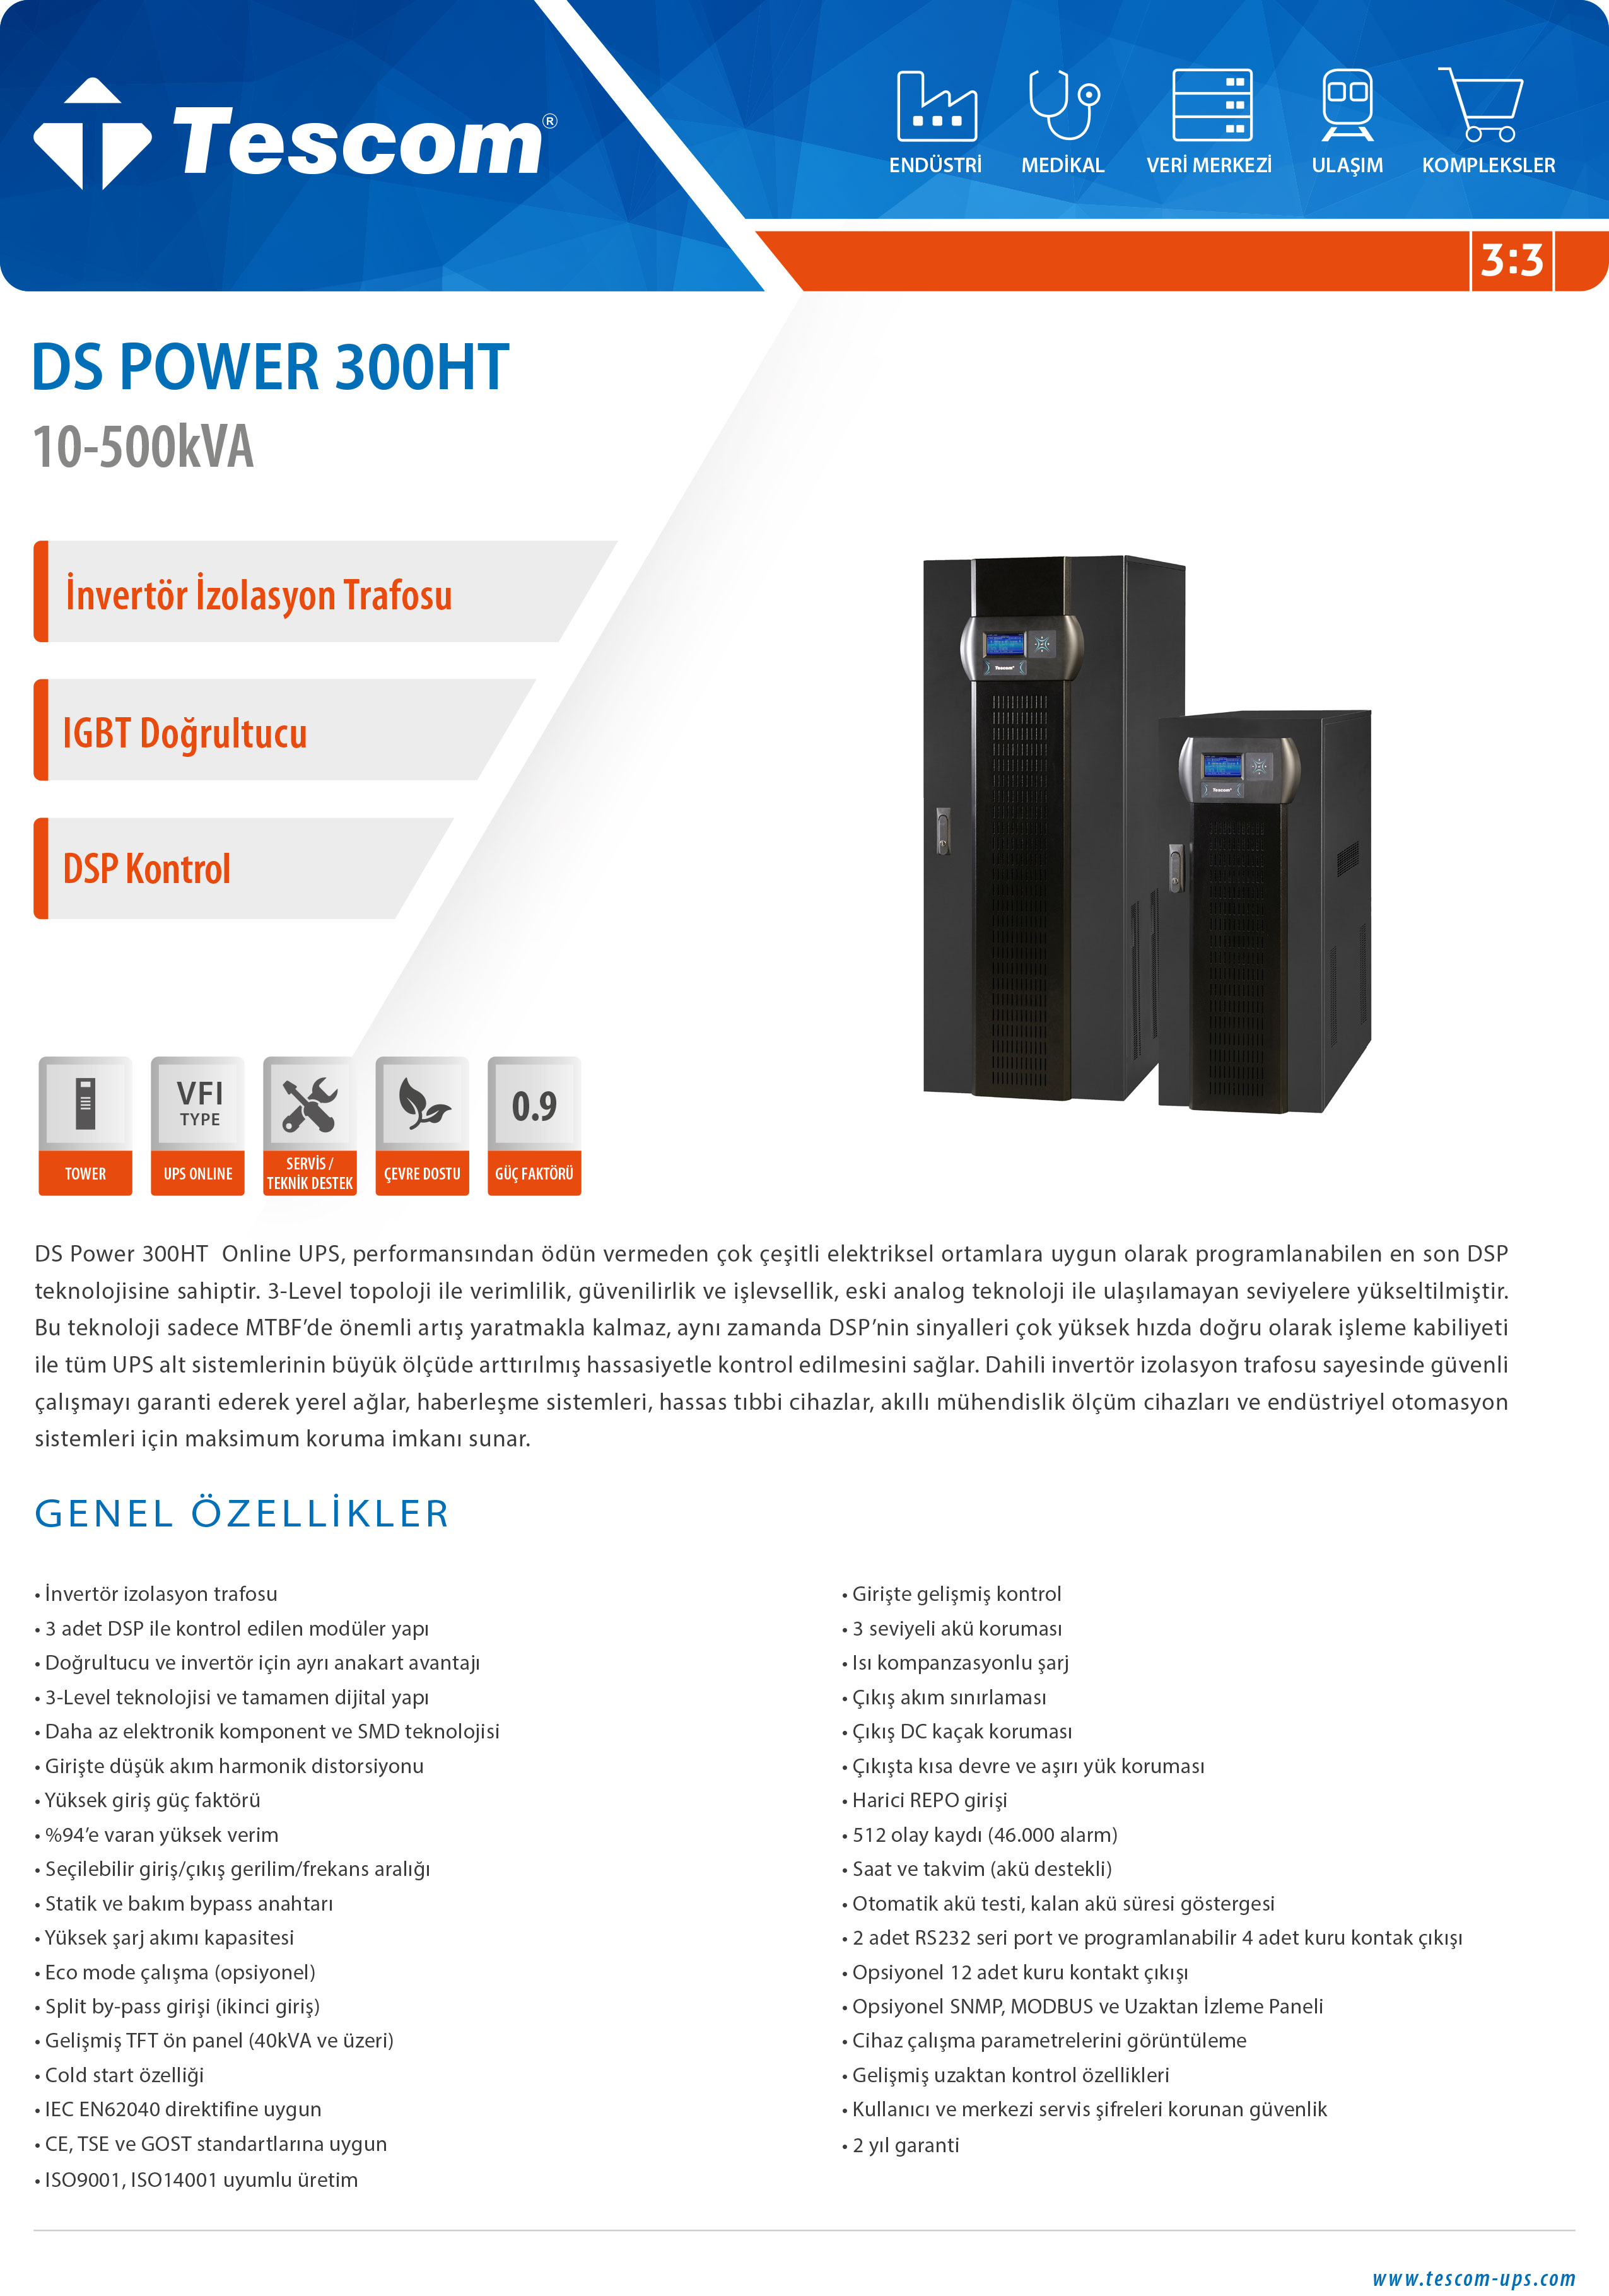 DS POWER 300HT 10 - 500 kVA